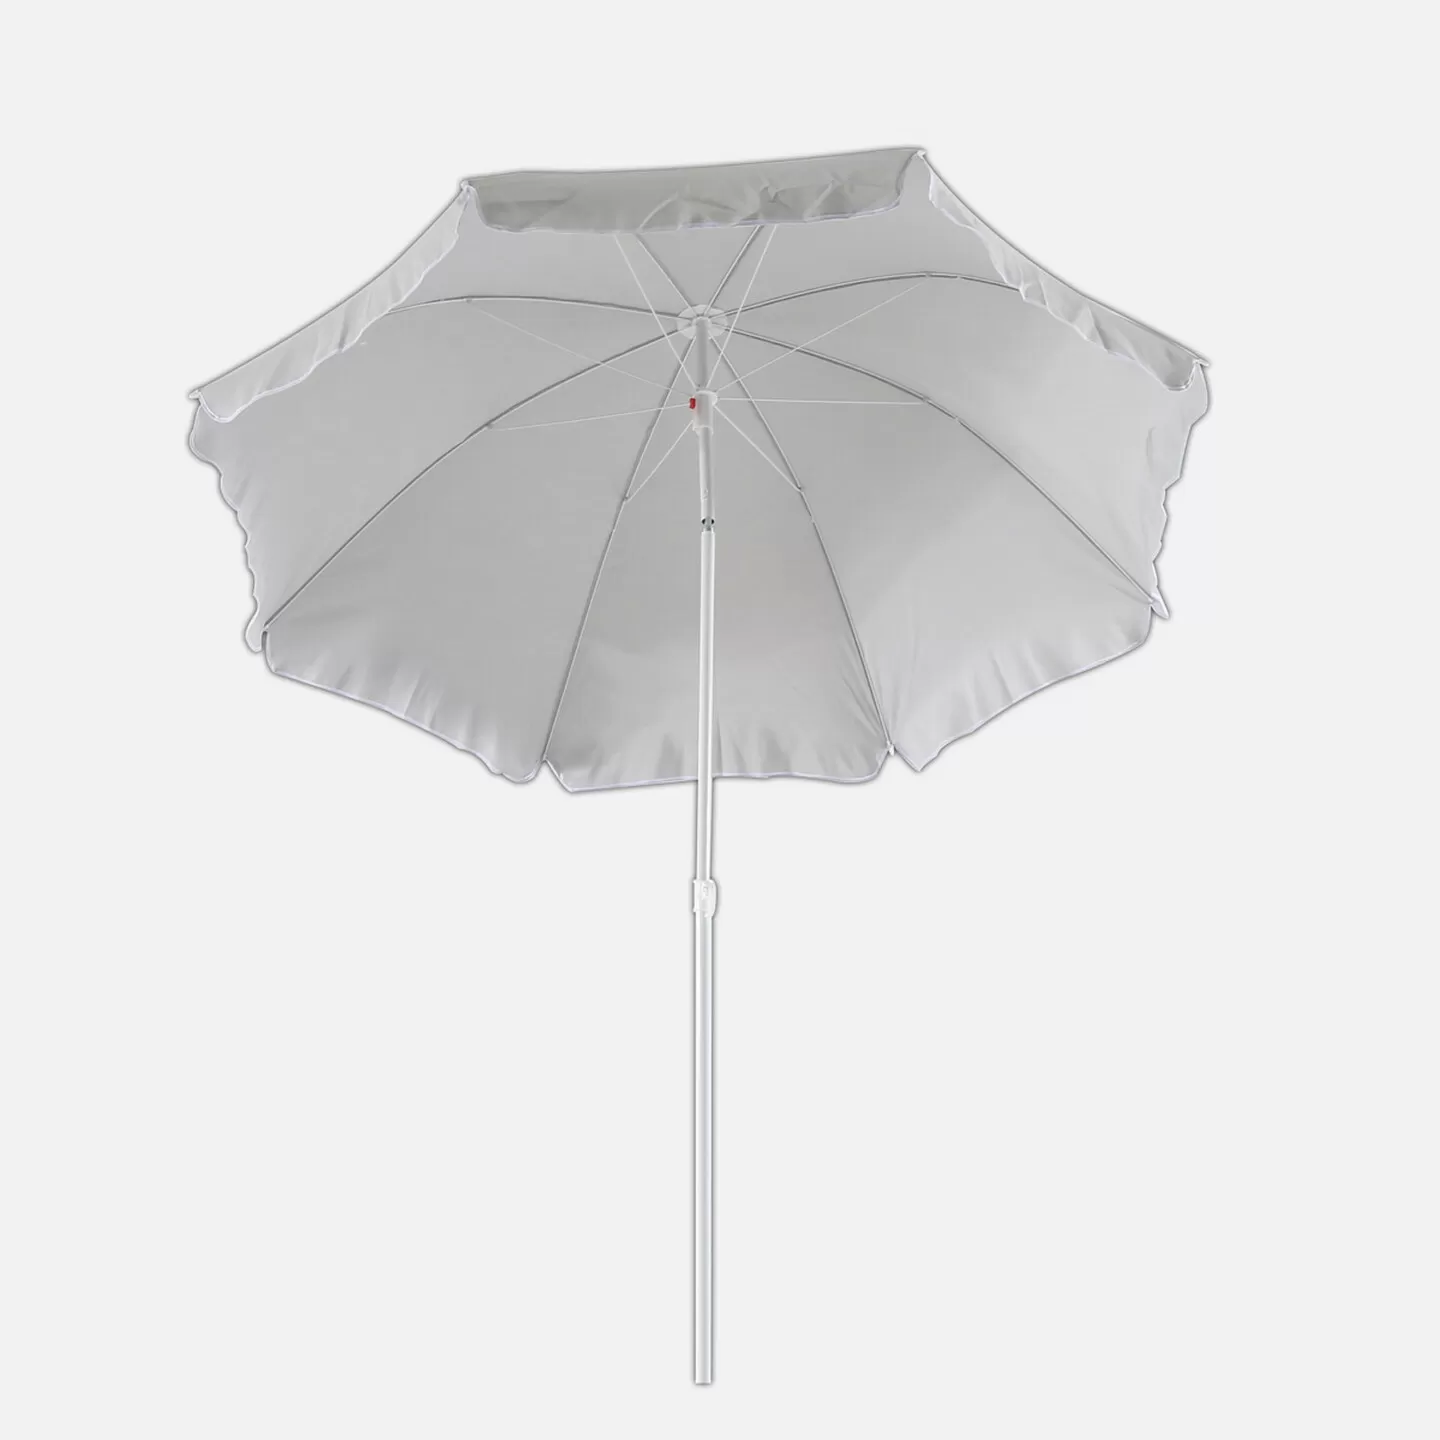 Sunfun Provence II Şemsiye Açık Gri 200 cm - Thumbnail